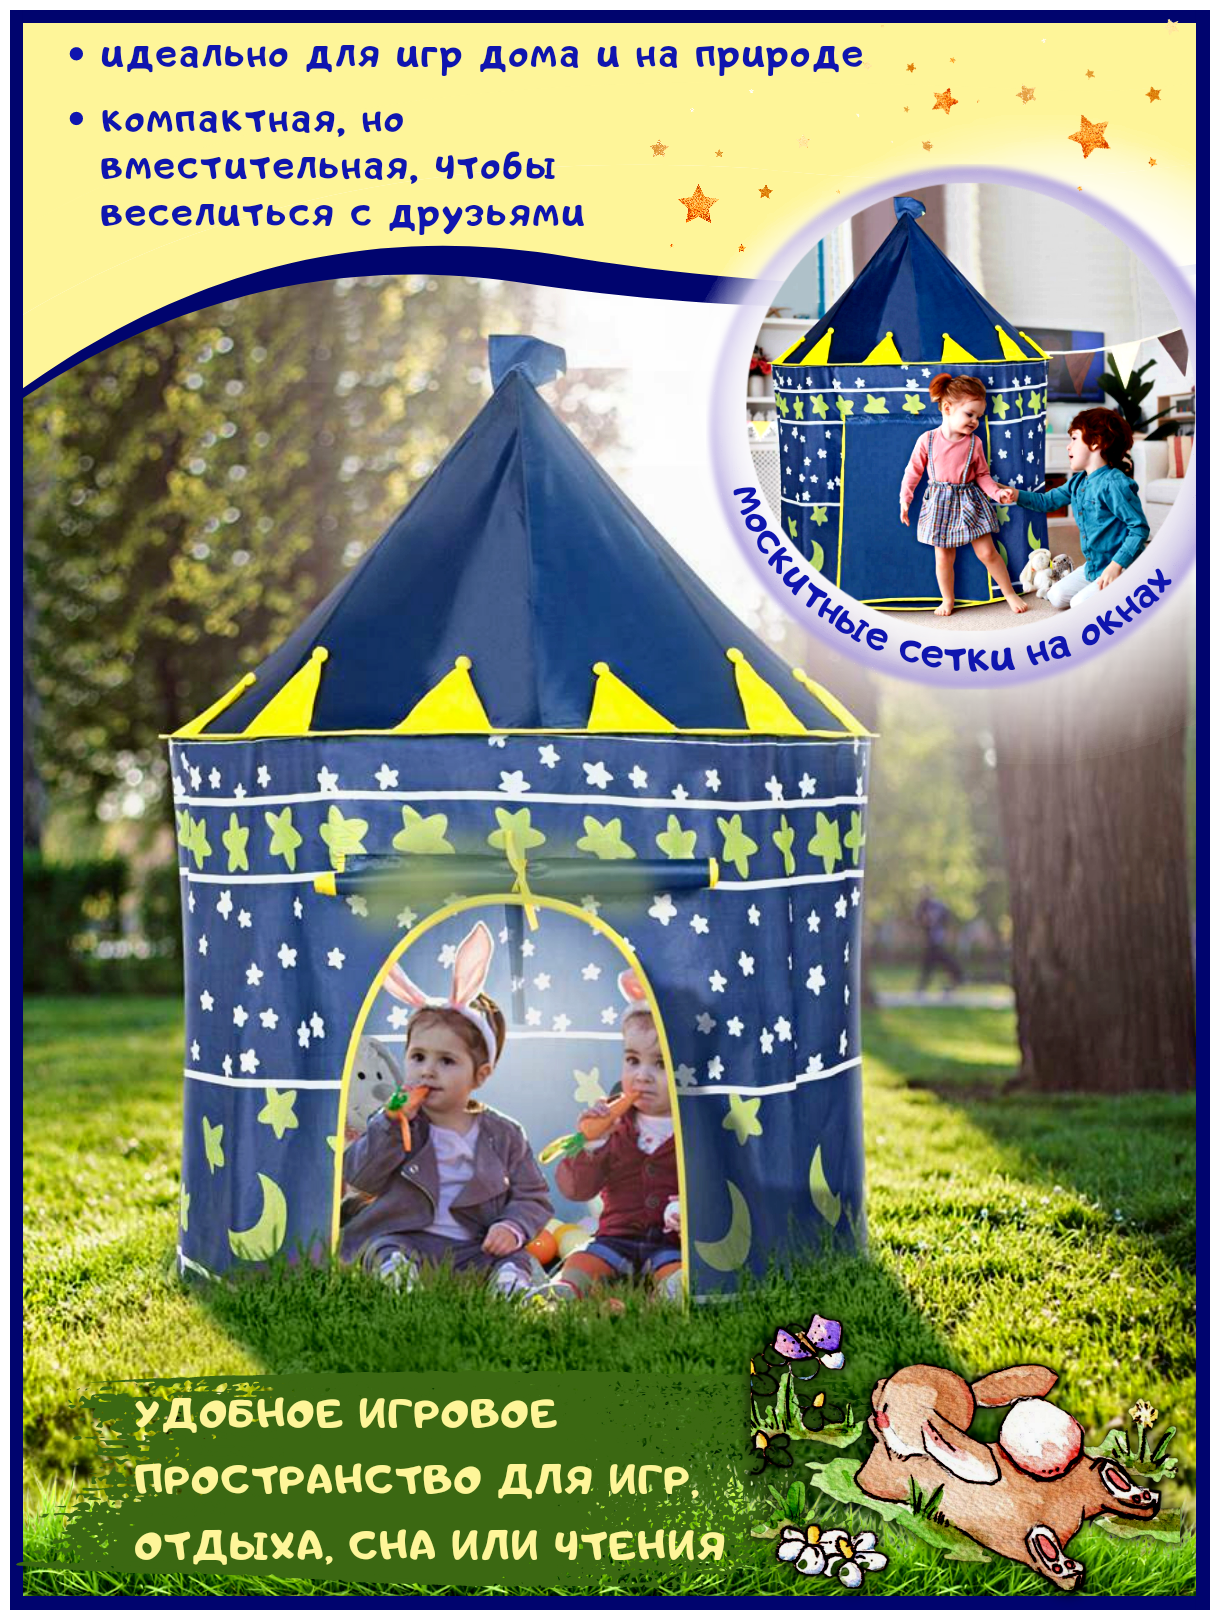 Детские игрушки для дома и улицы, игровой домик, палатка с замком принцессы, подарок для детей (темно-синий)